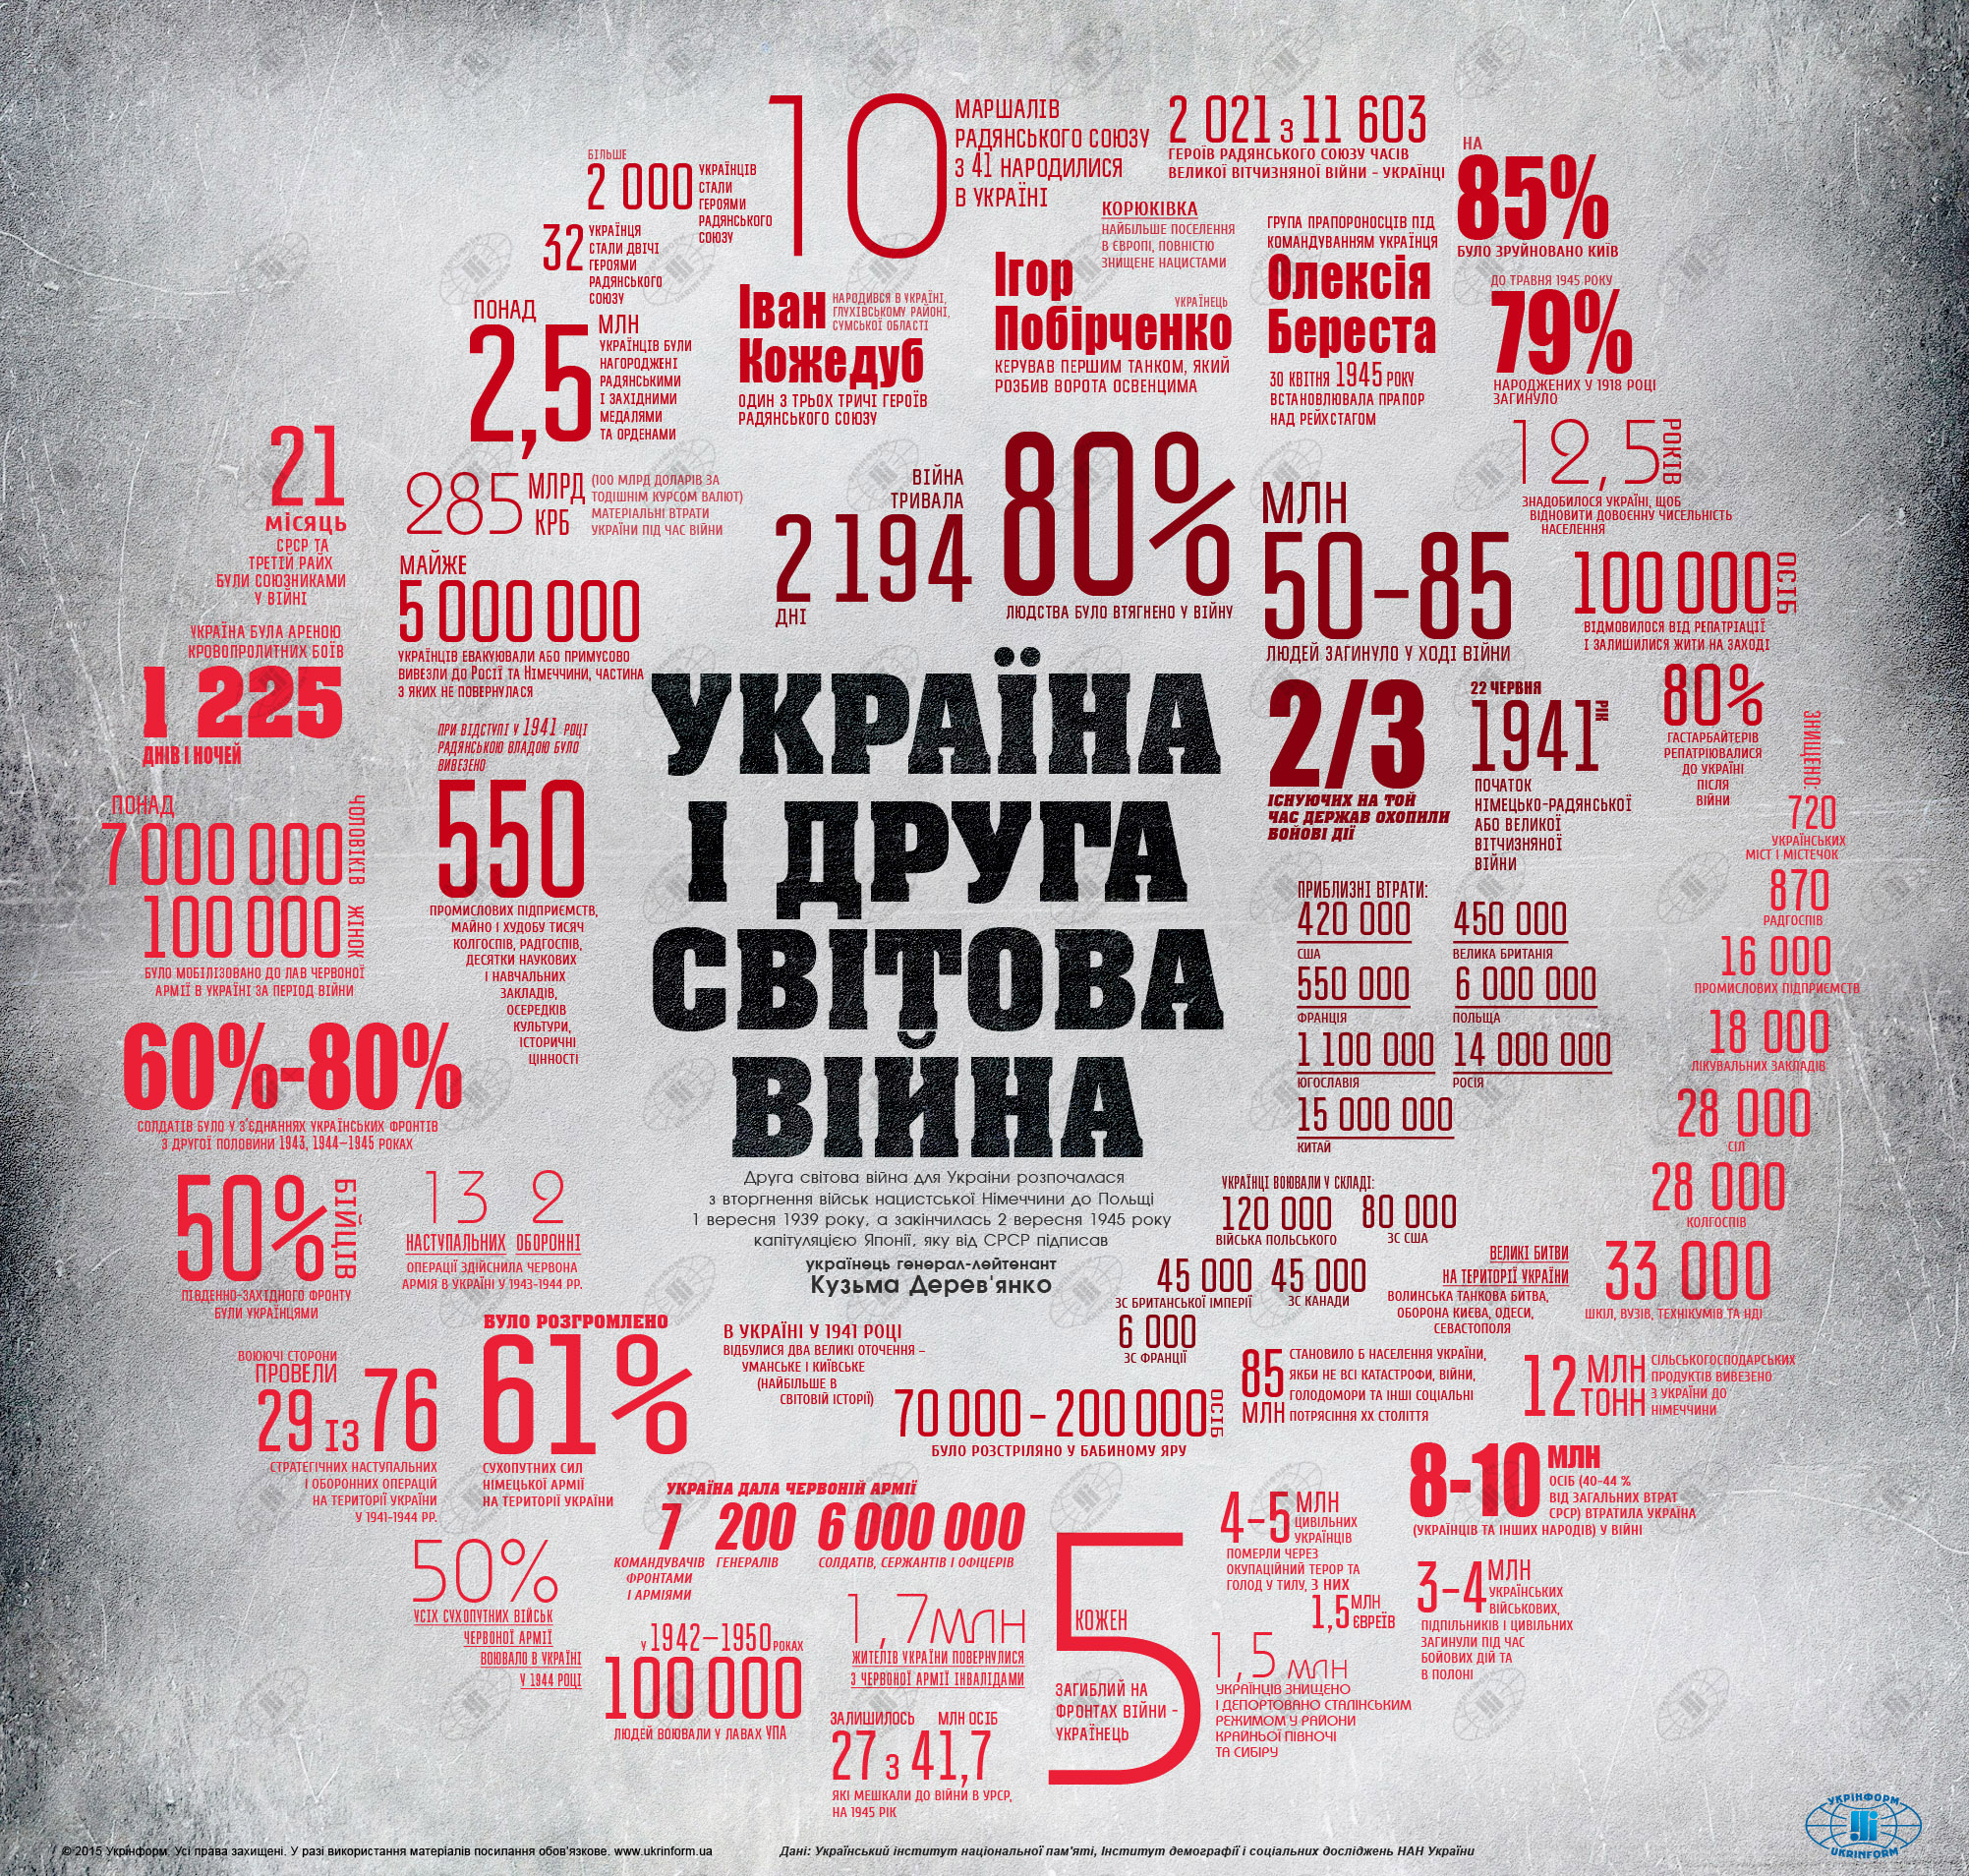 Видатна роль українців у Другій світовій війні: інфографіка